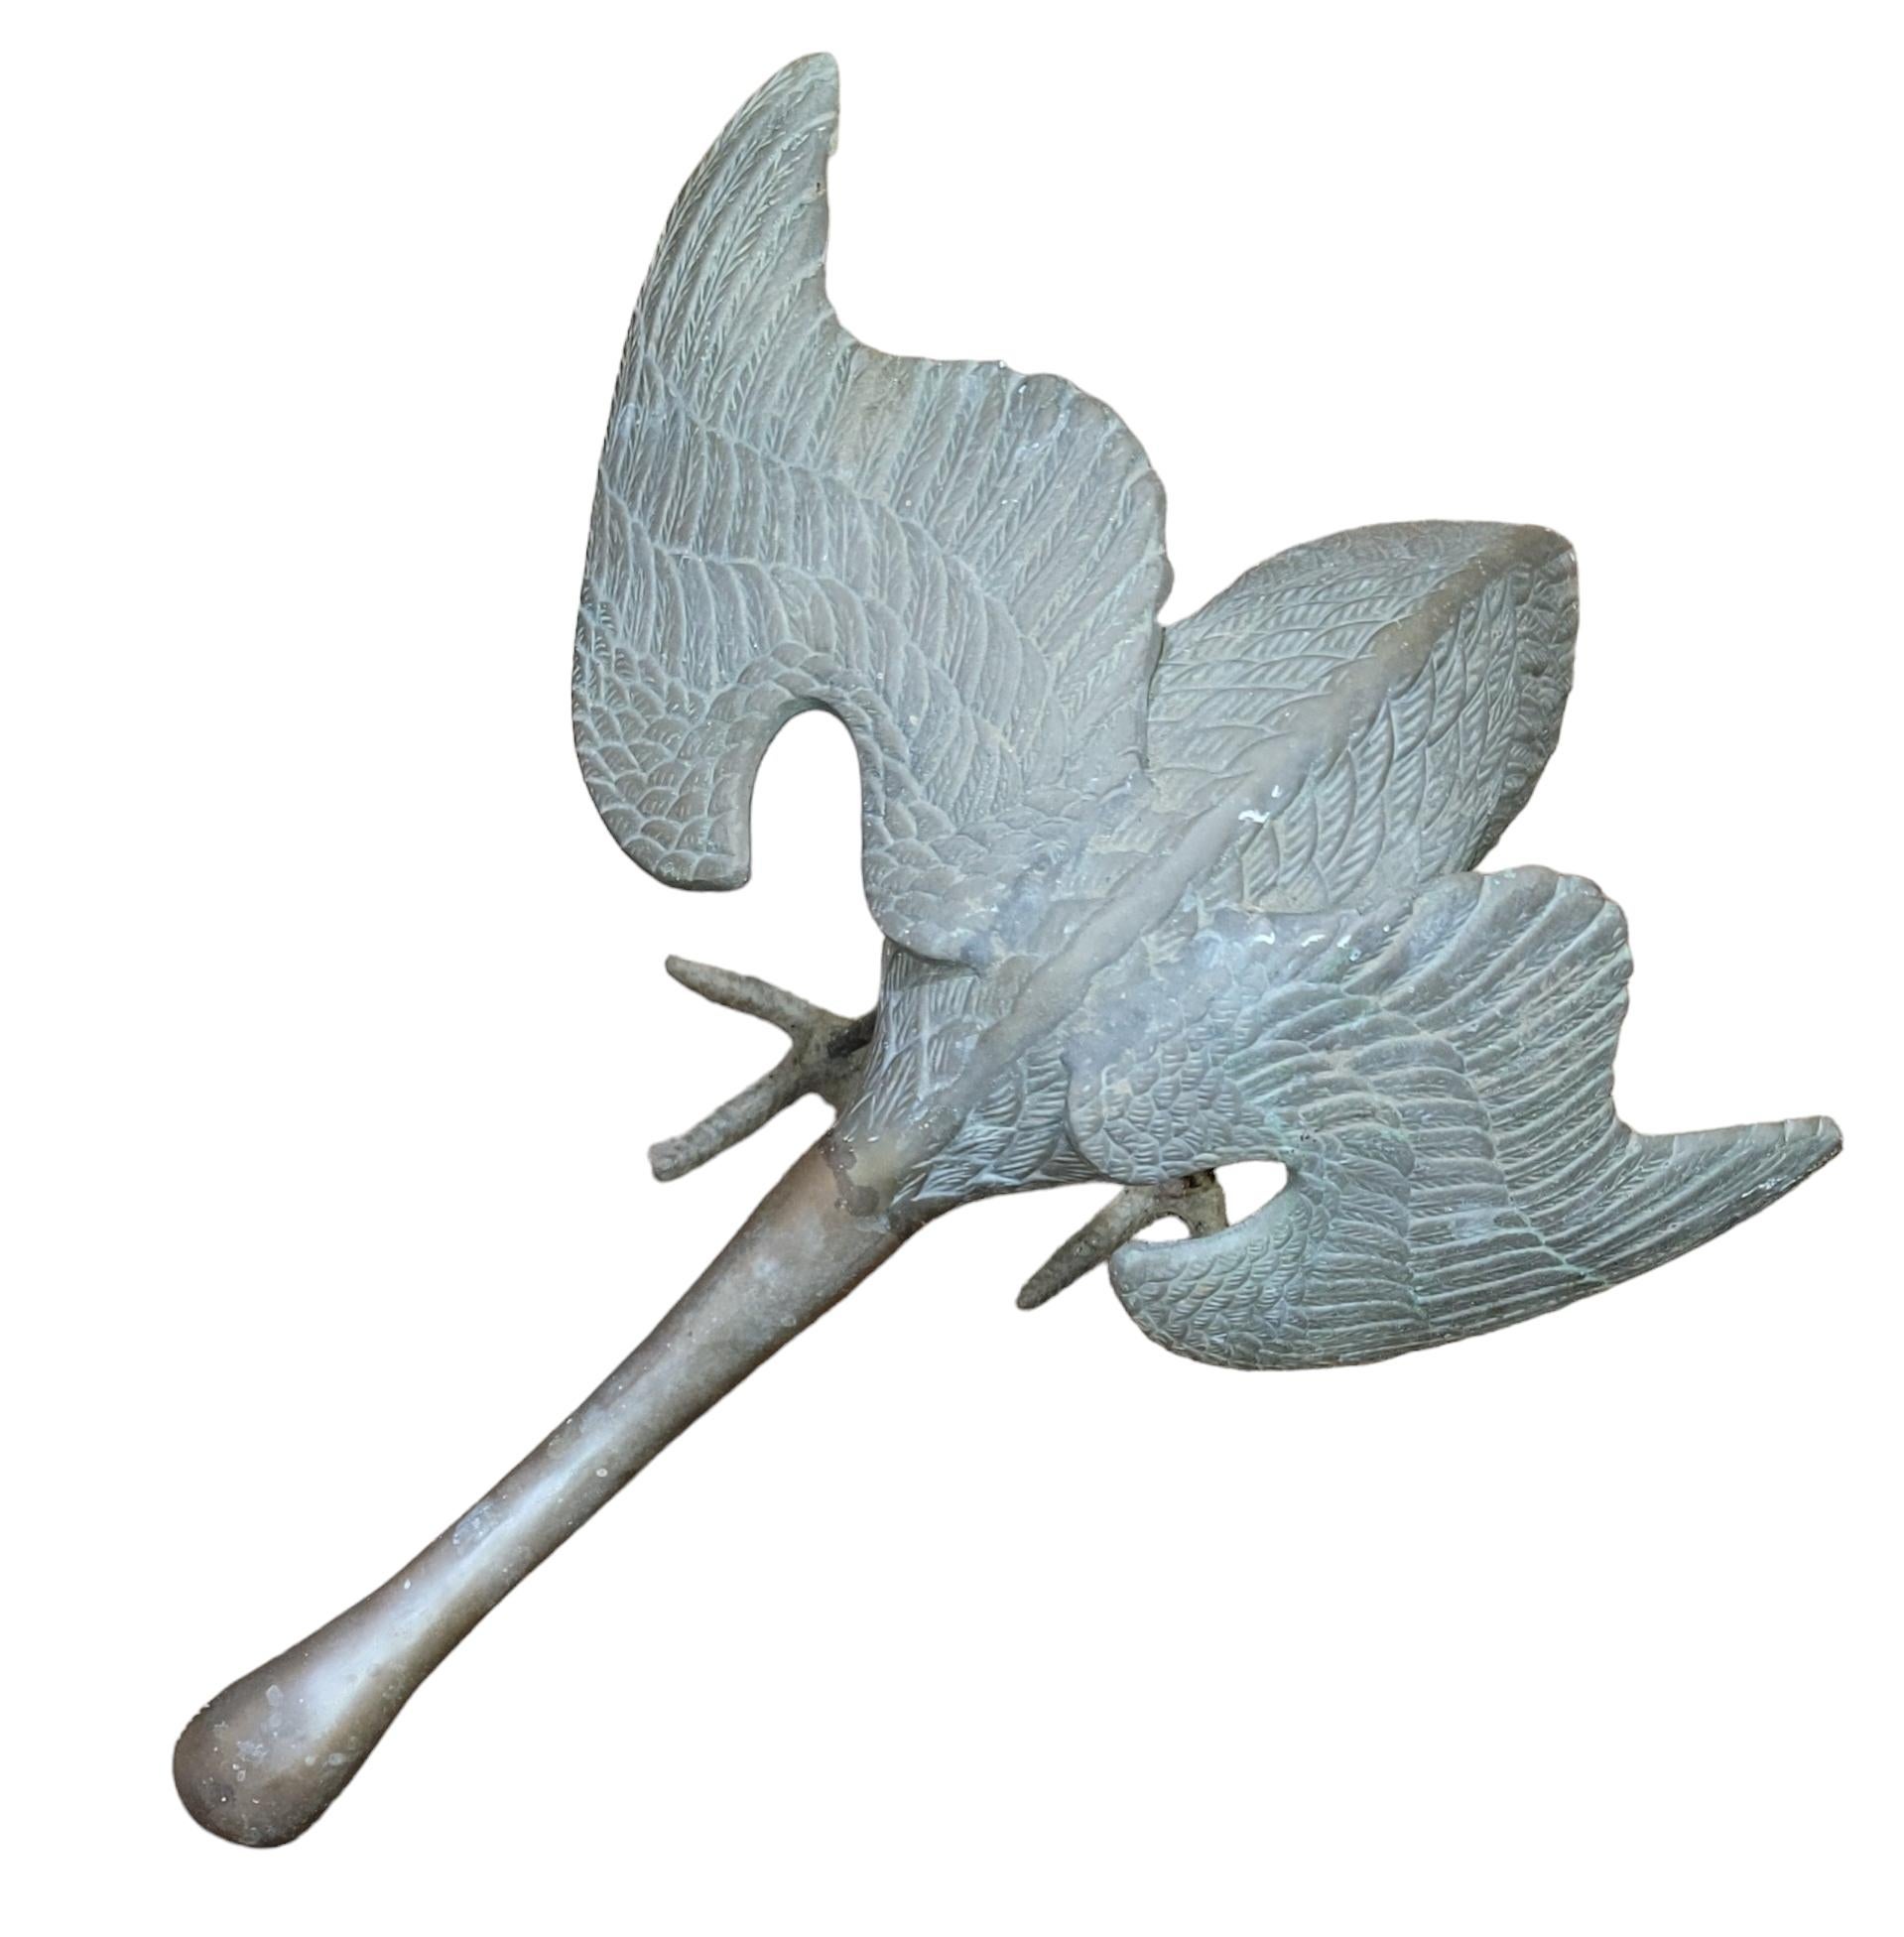 Grande statue d'oiseau en bronze pour le jardin. Cette statue animée représente une grue en train d'atterrir ou de décoller pour prendre son envol. L'envergure de 15 pouces et l'angle des ailes donnent une impression d'action à la statue. Le cou est